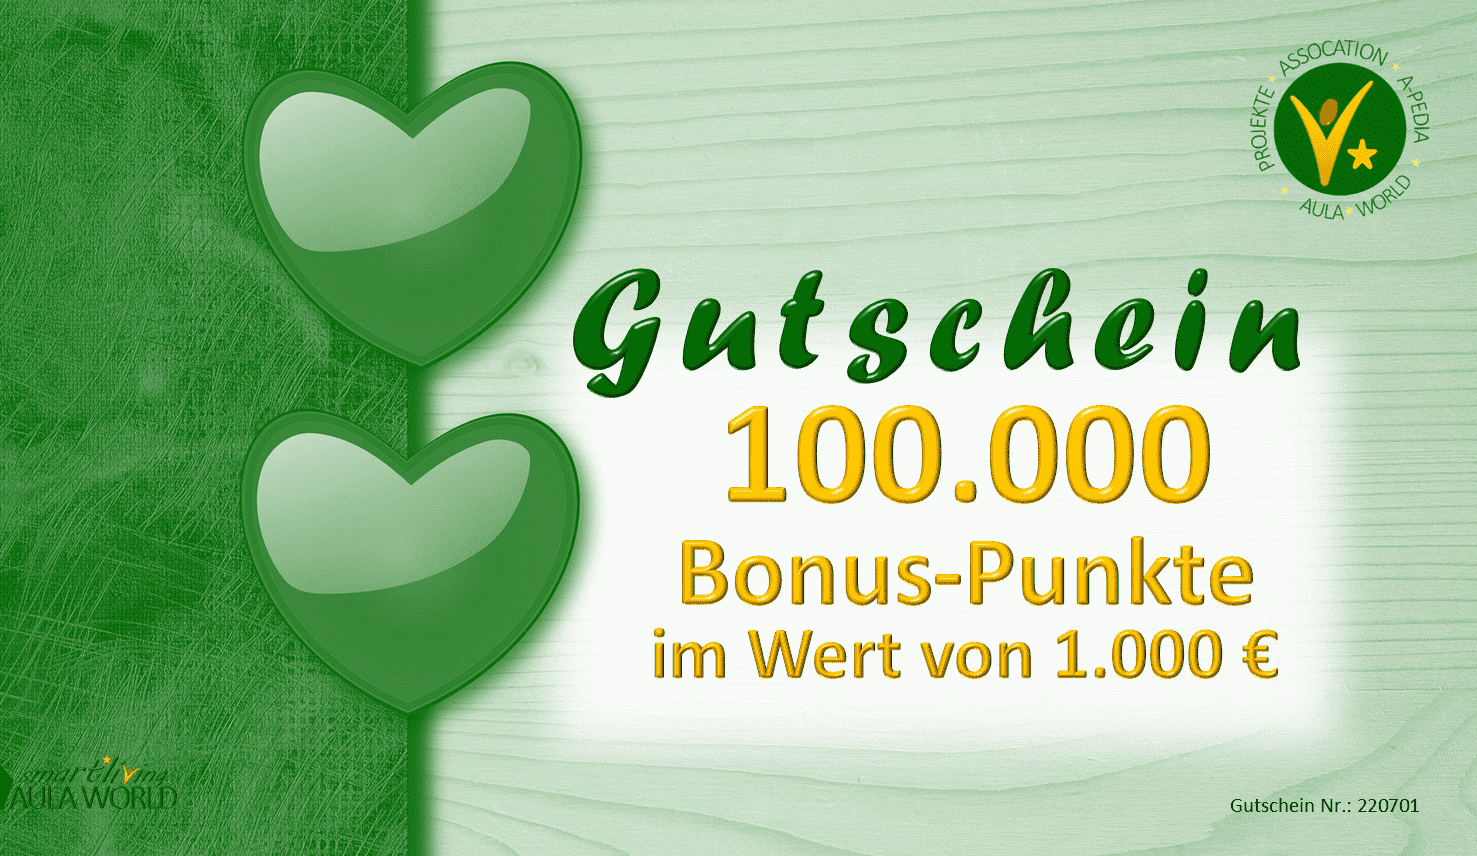 Geschenk-Gutschein "DONATION-1000"